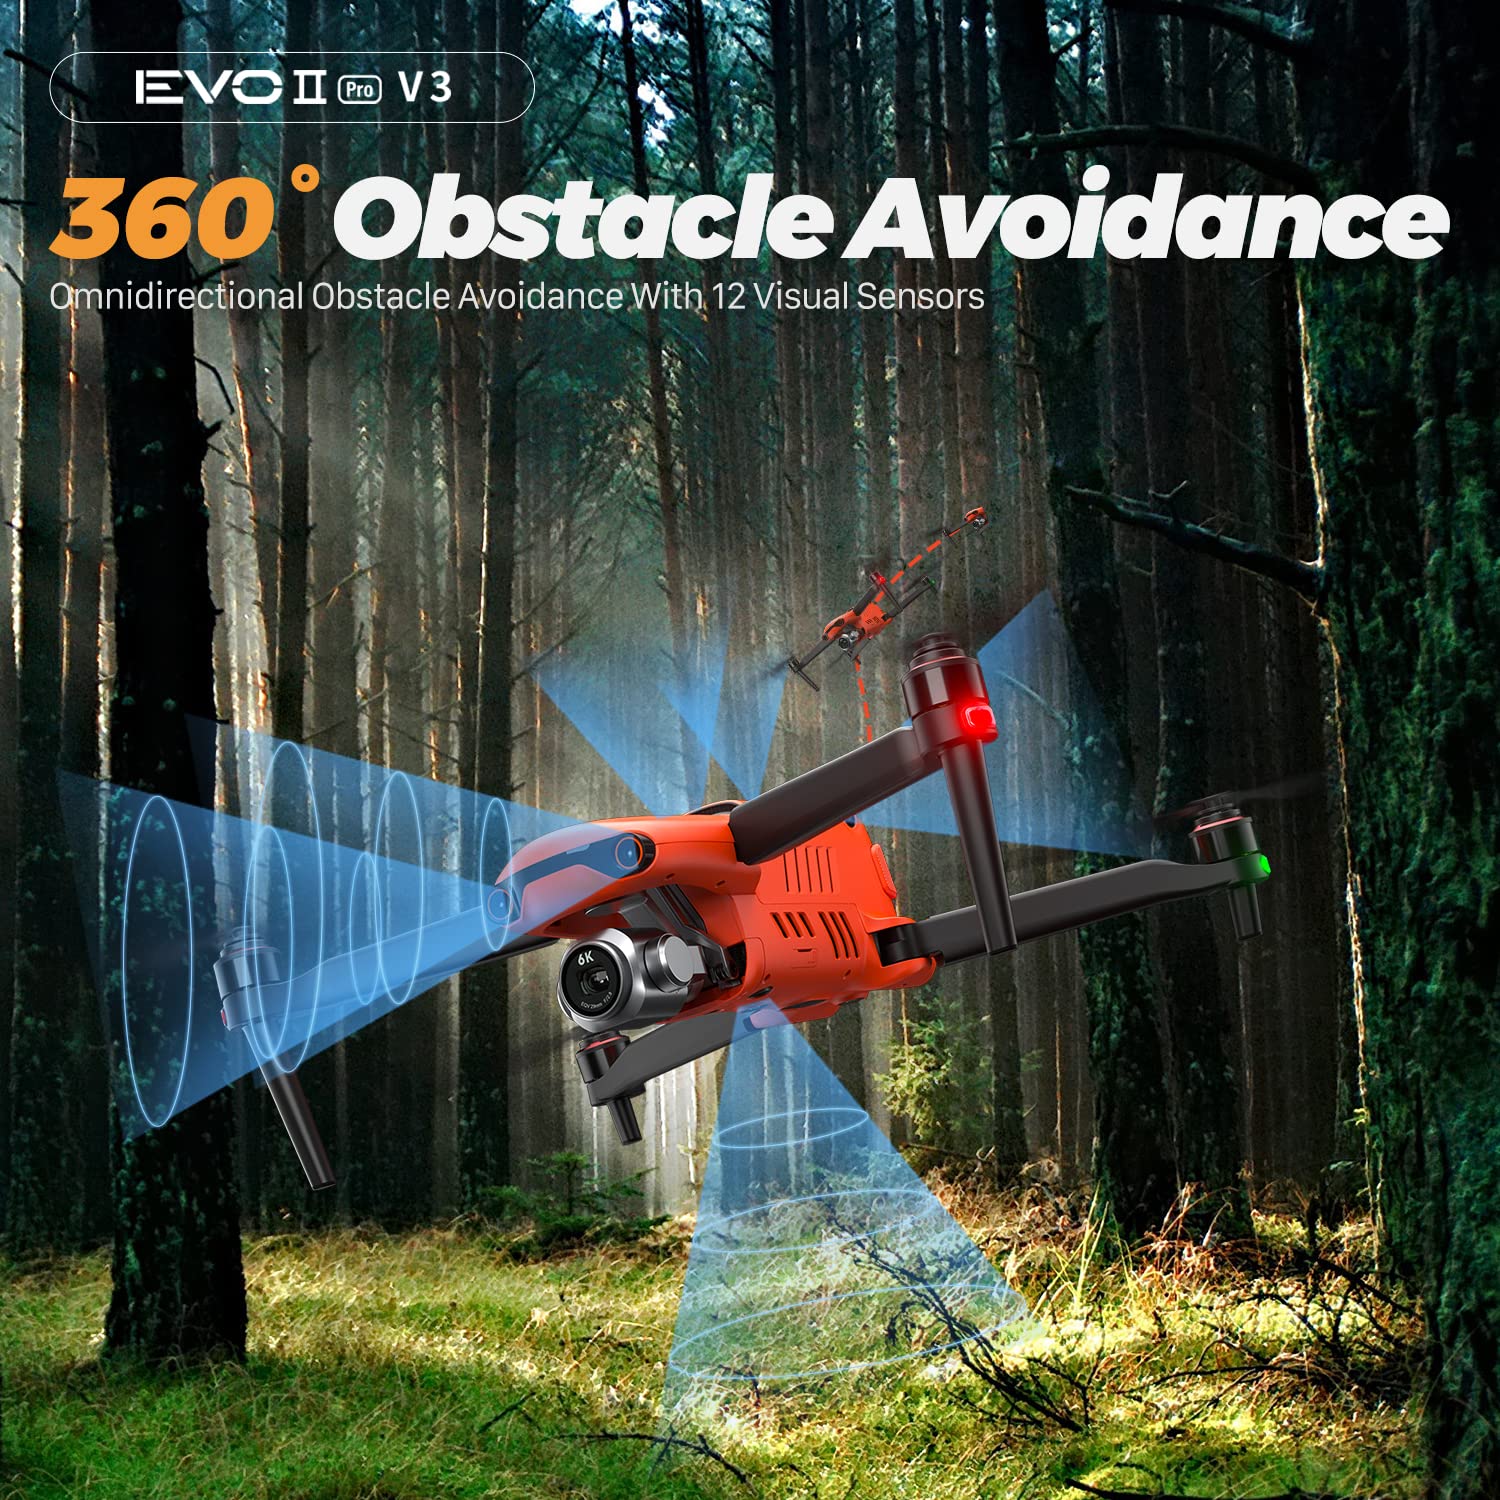 Autel Robotics EVO II PRO V3 - 360° Obstacle Avoidance